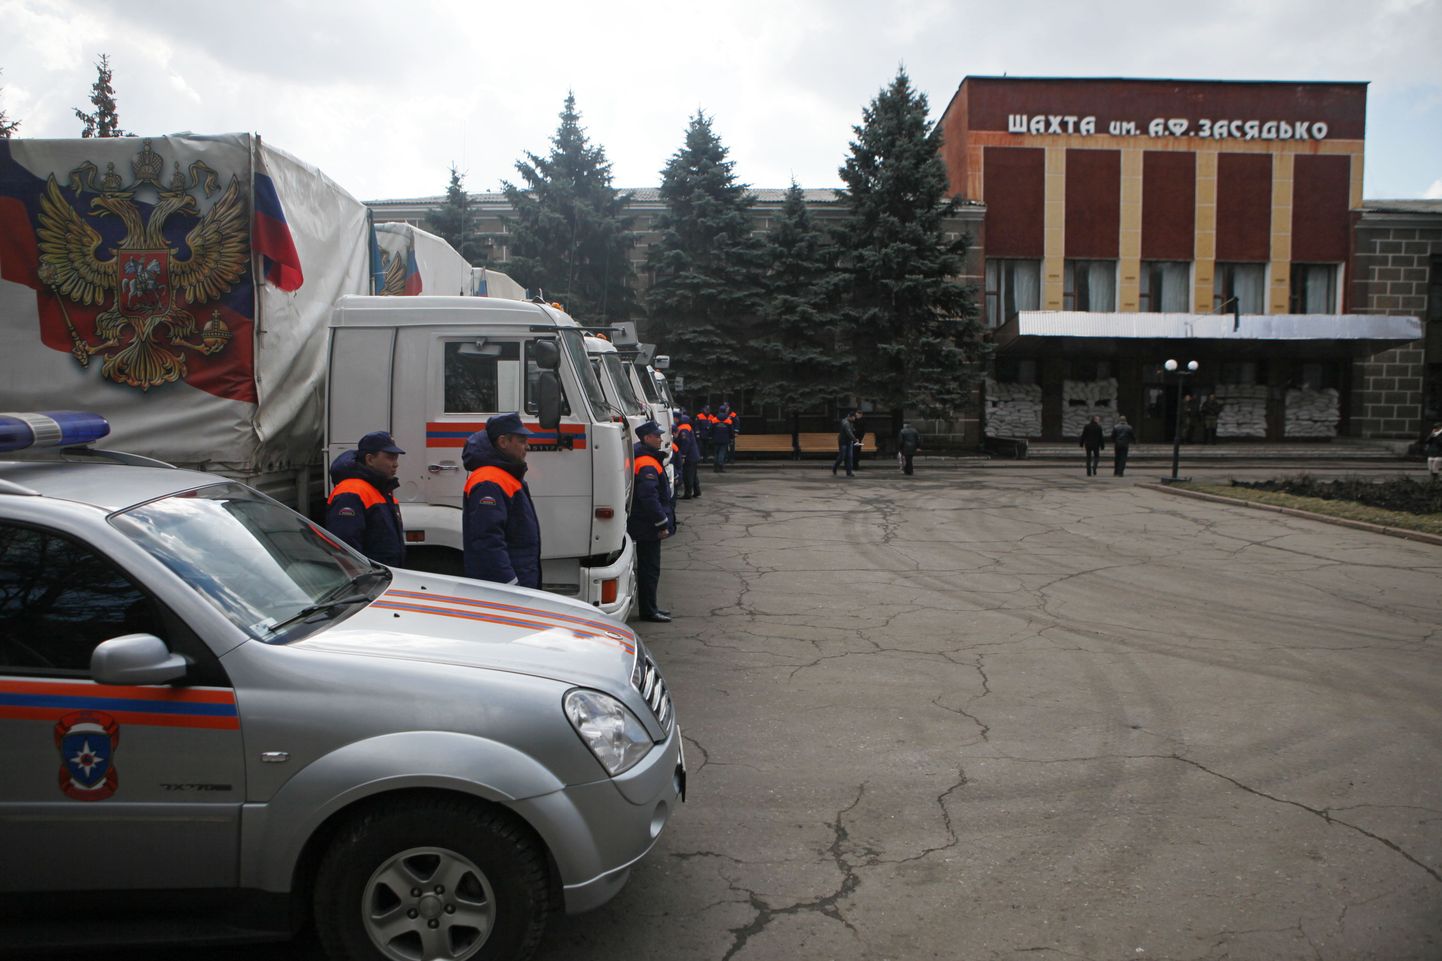 7. märtsil seisid Zasjadko-nimelise kaevanduse peahoone ees Vene eriolukordade ministeeriumi autod, mis kandsid humanitaarabile viitavaid silte.